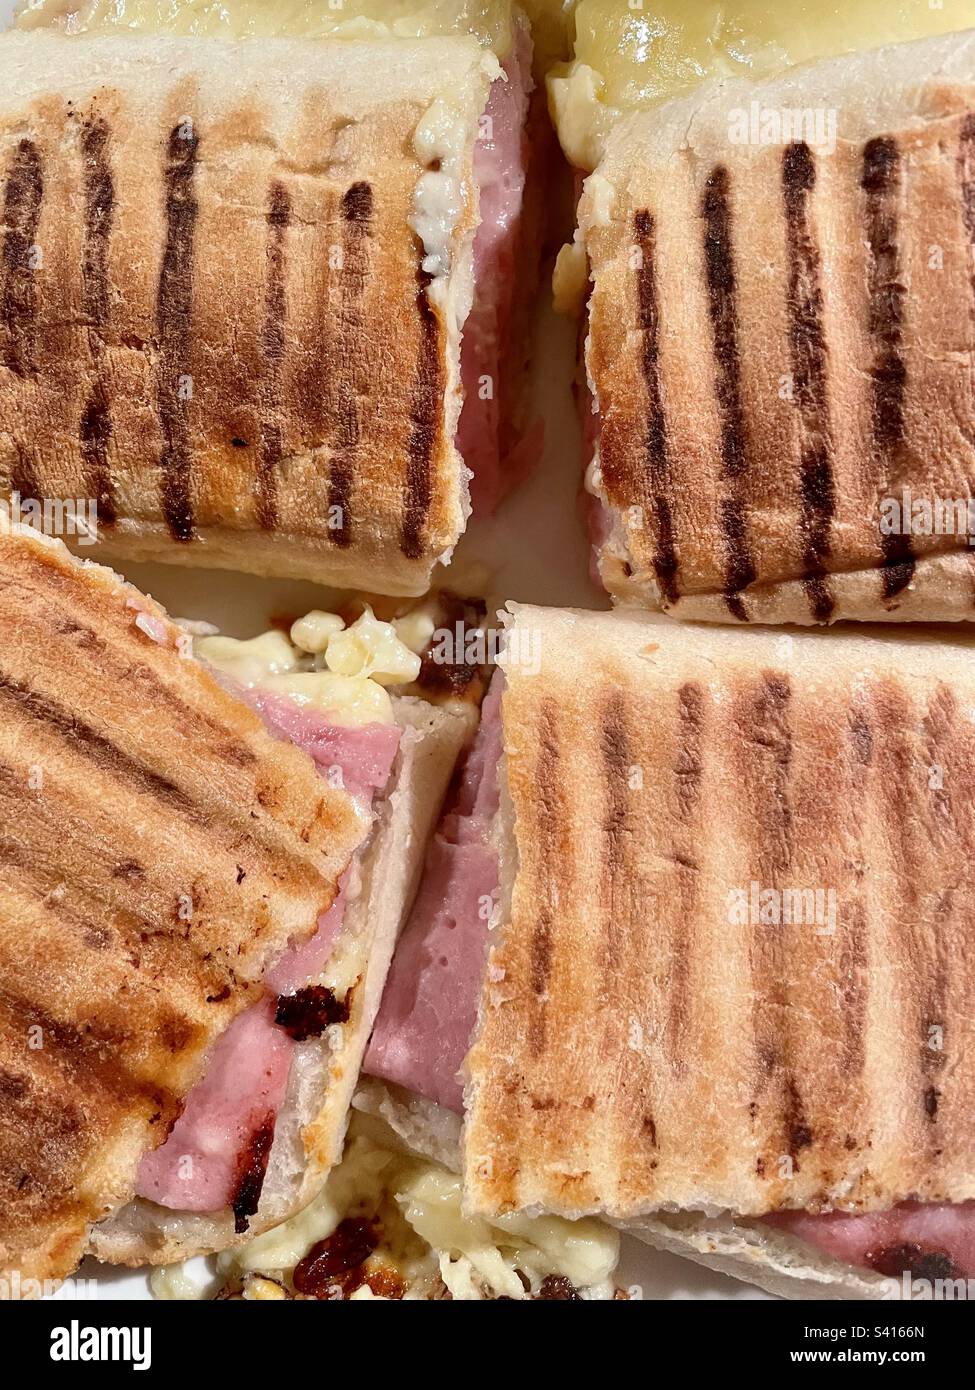 Ham and cheese panini. Stock Photo